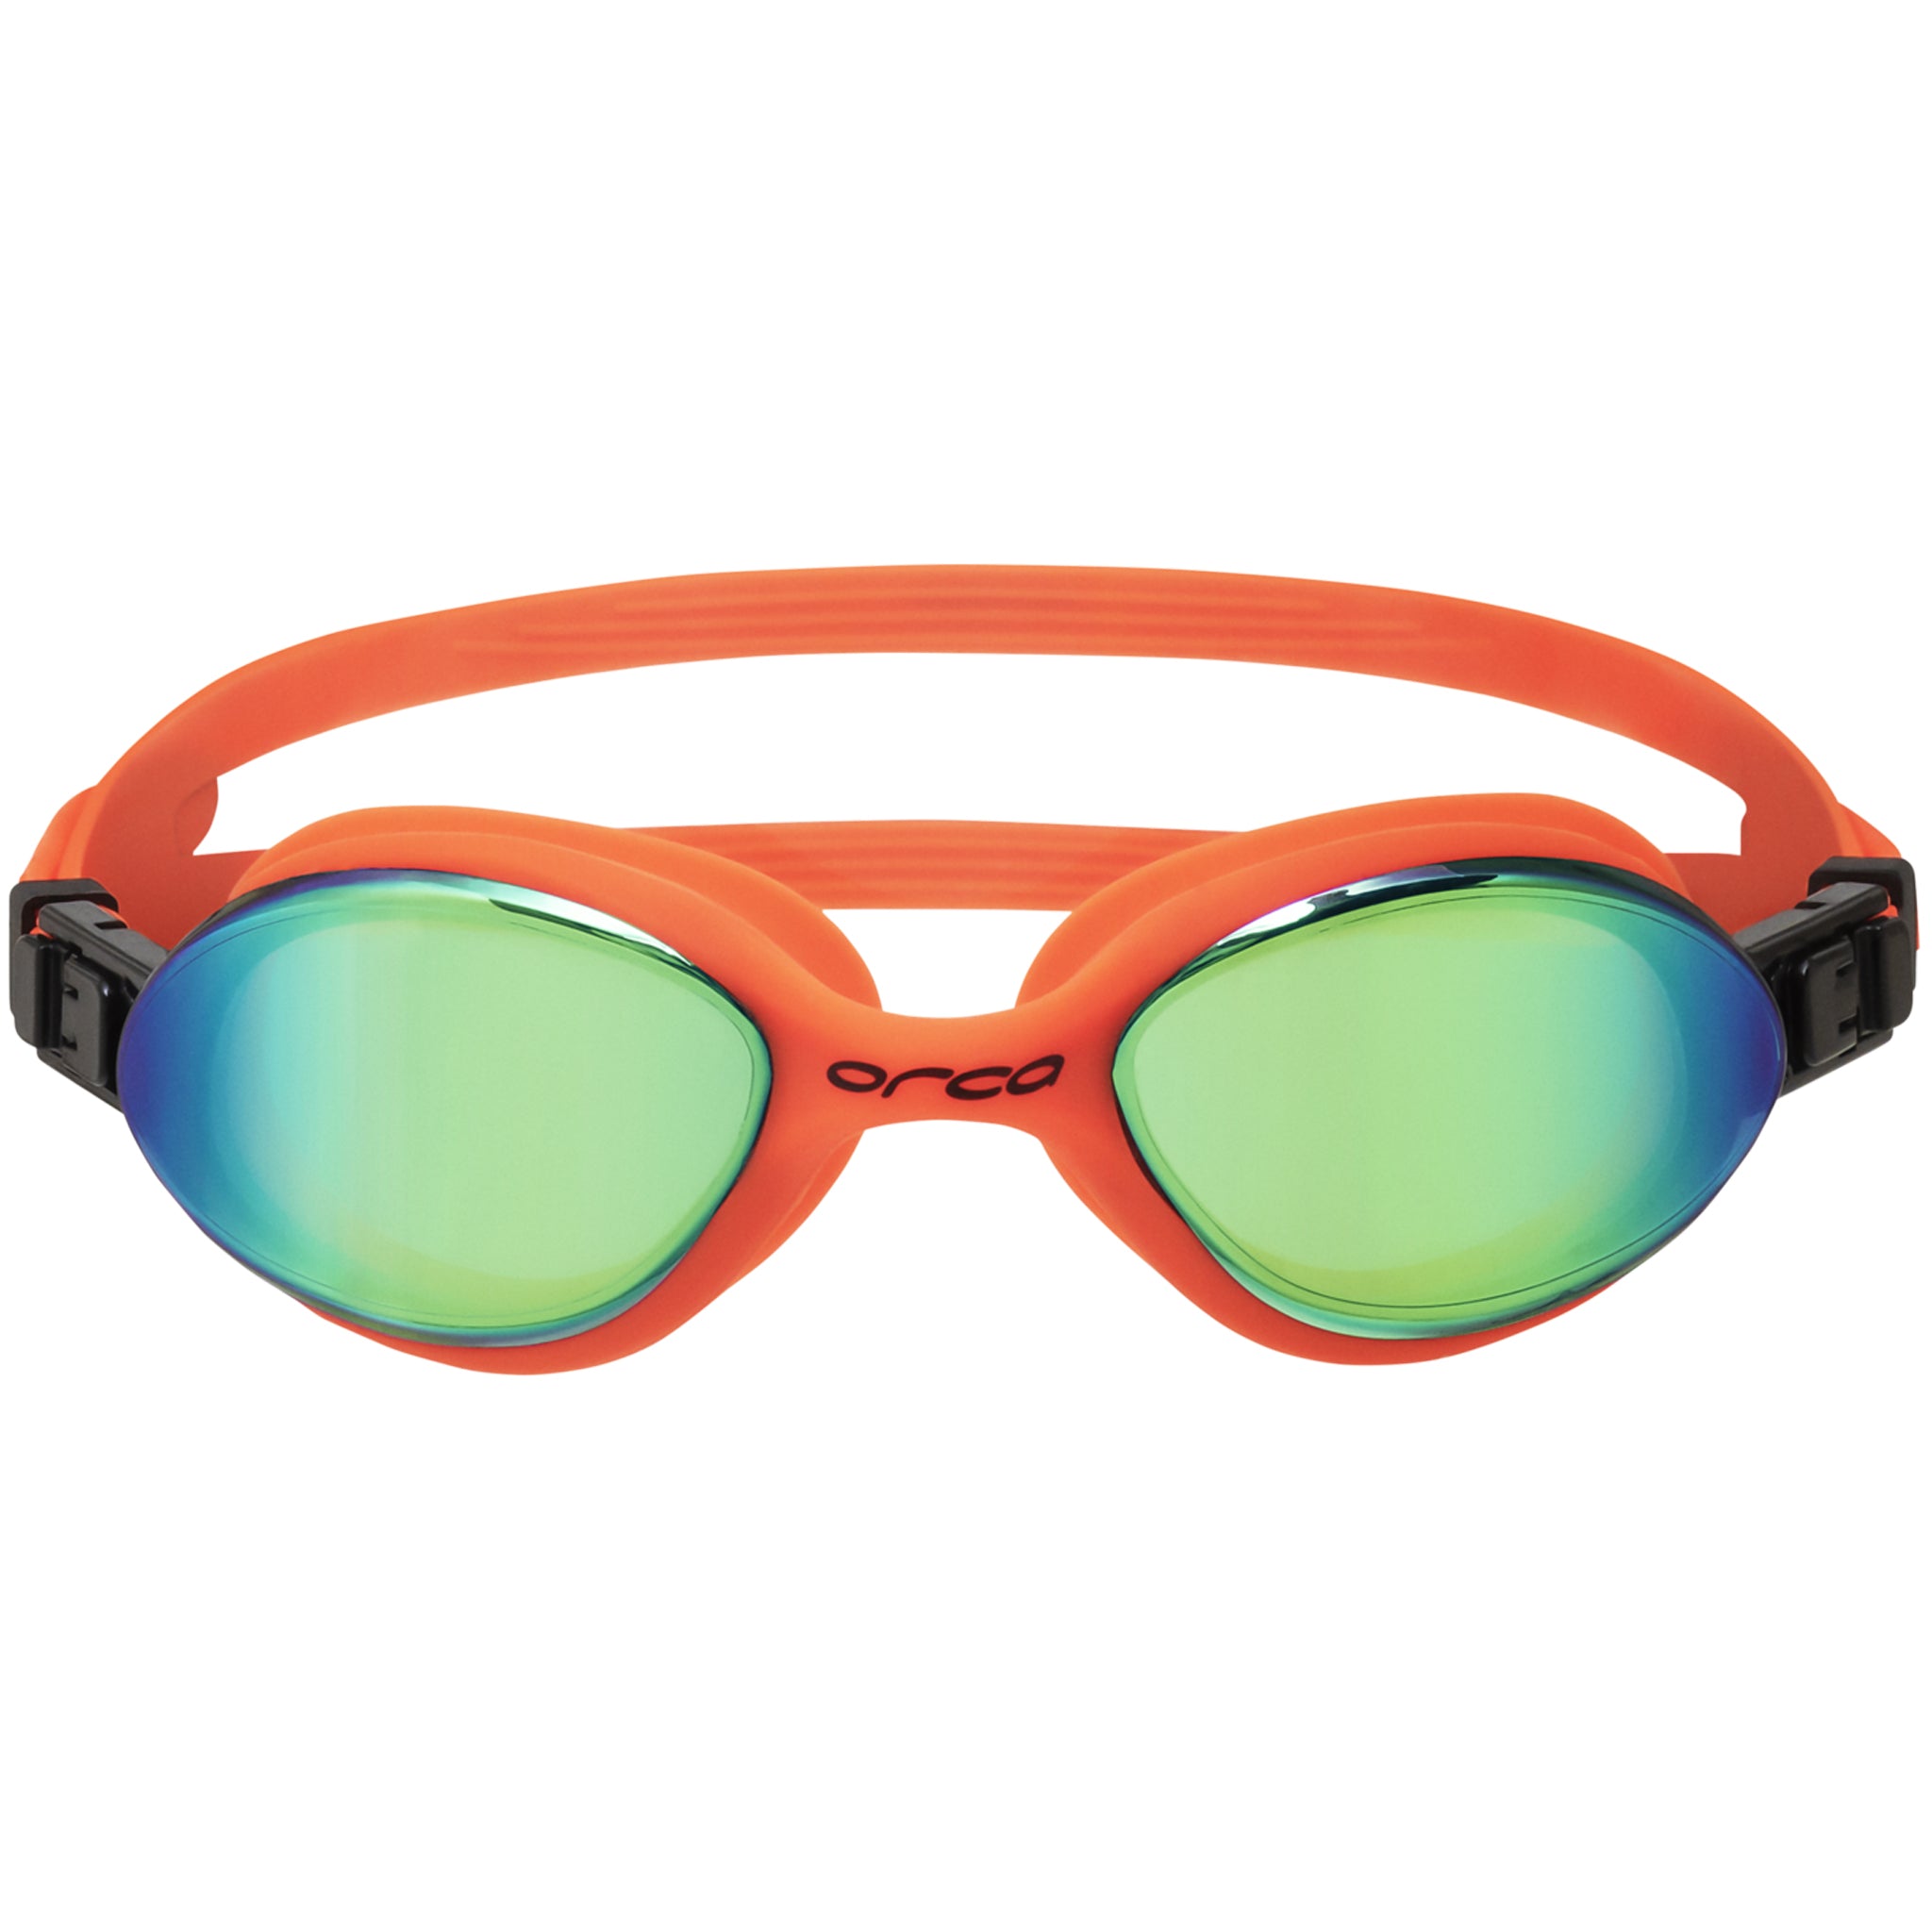 Orca Killa 180 Swimming Goggles with Mirrored Lenses | Orange